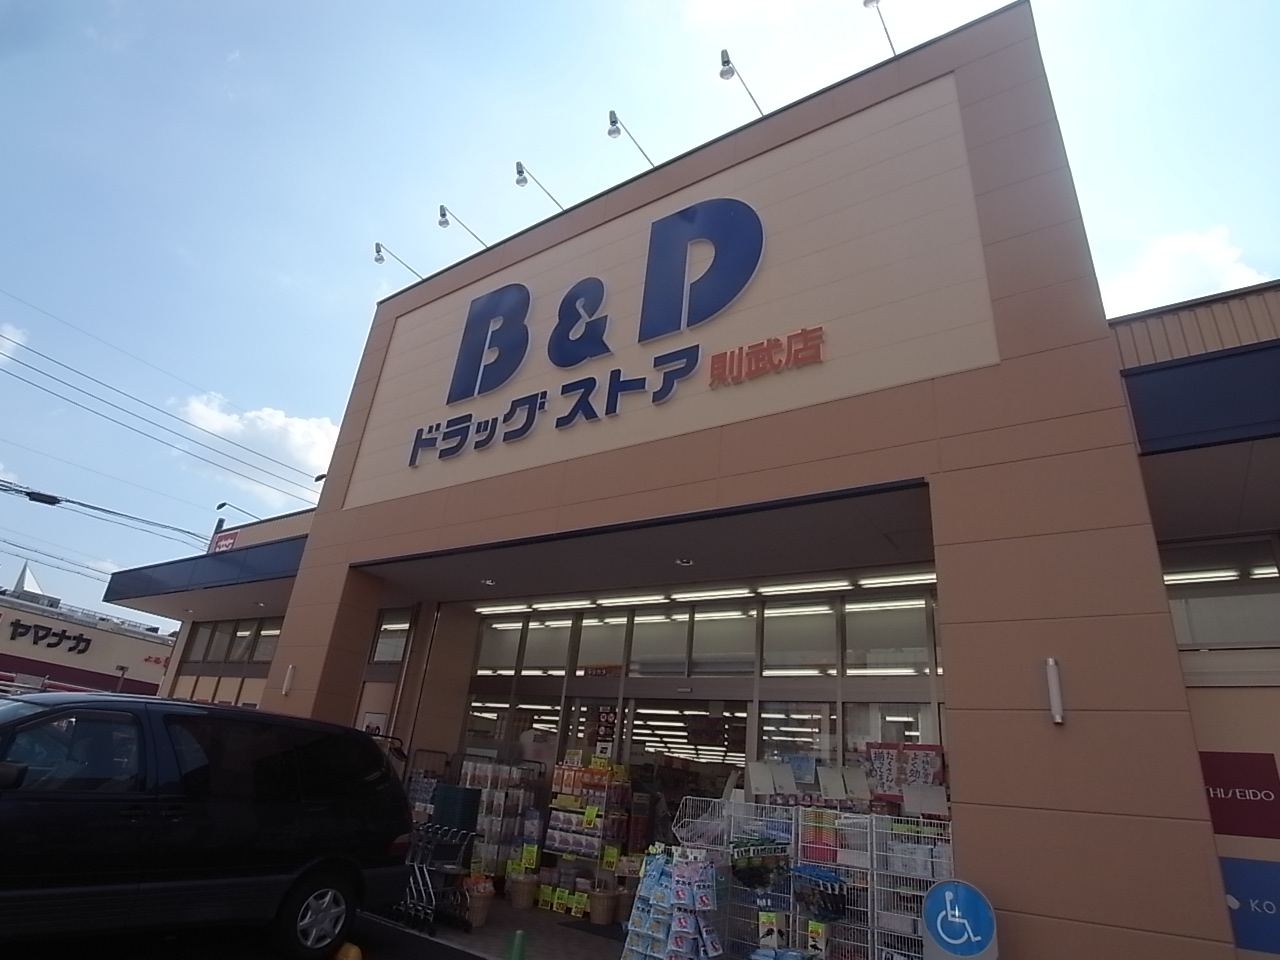 Dorakkusutoa. Bea ・ and ・ Dee drugstore Noritake store (drugstore) to 400m